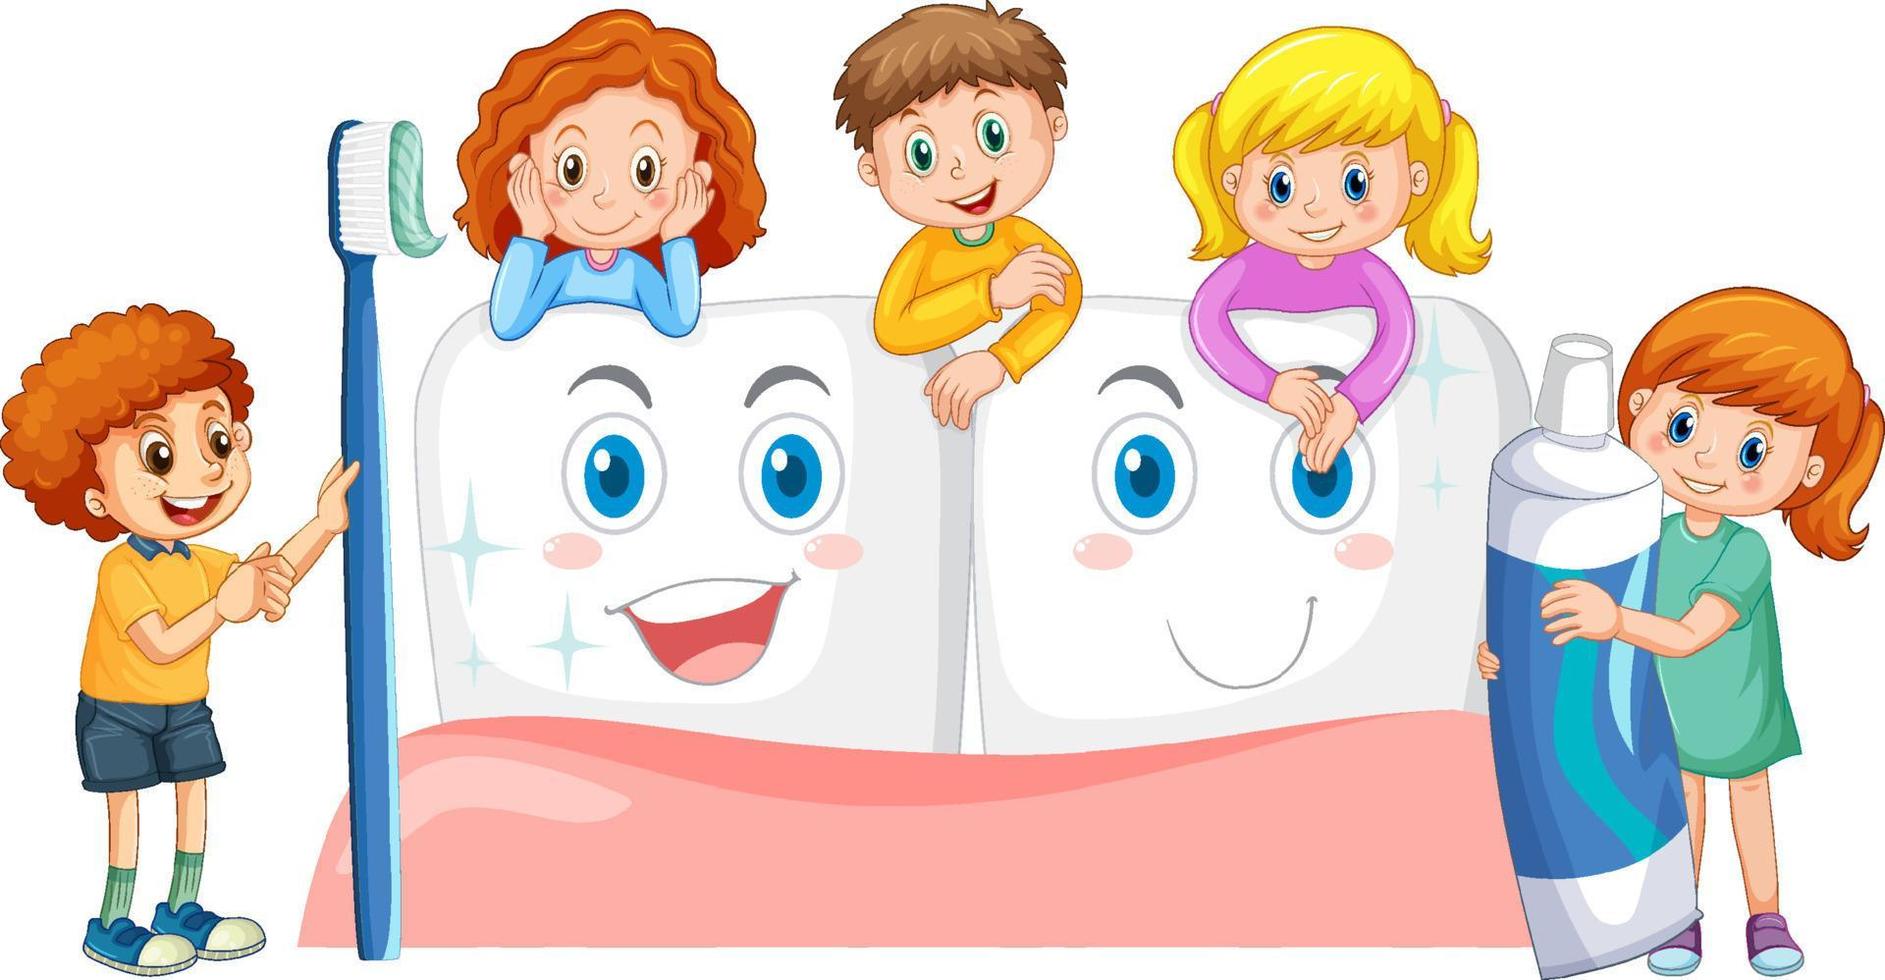 kinderen met tandpasta en tandenborstel met wittere tanden op een witte achtergrond vector